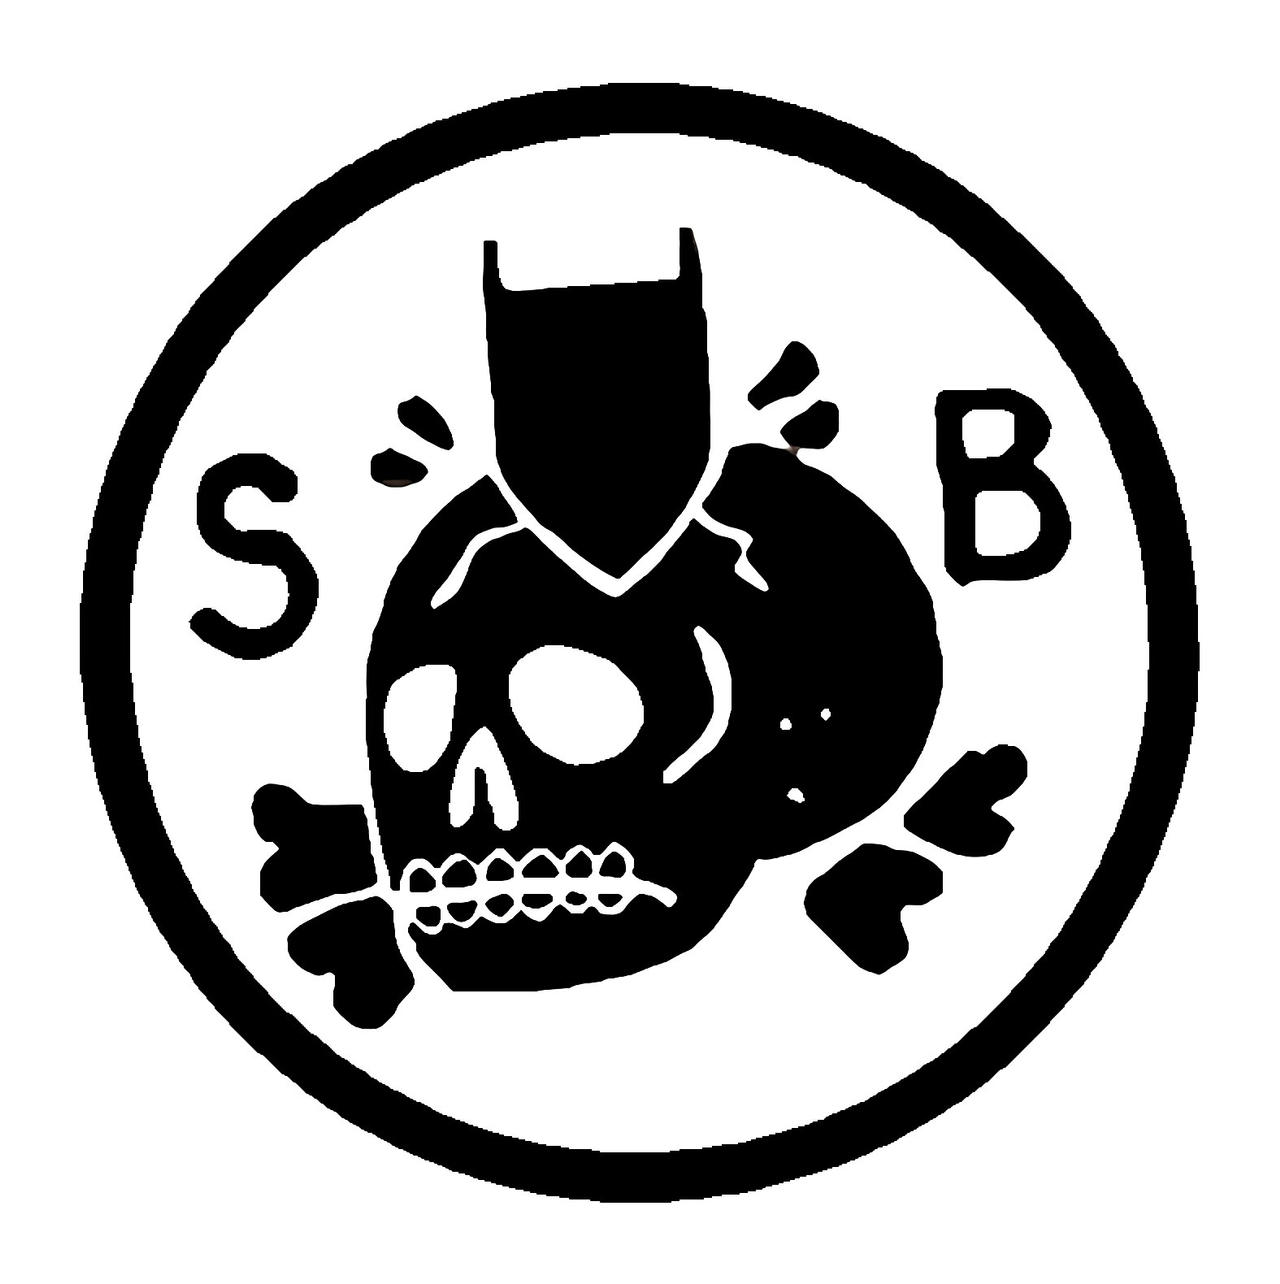 Zombie Army Survivor Brigade Logo 2 by Drushnik on DeviantArt